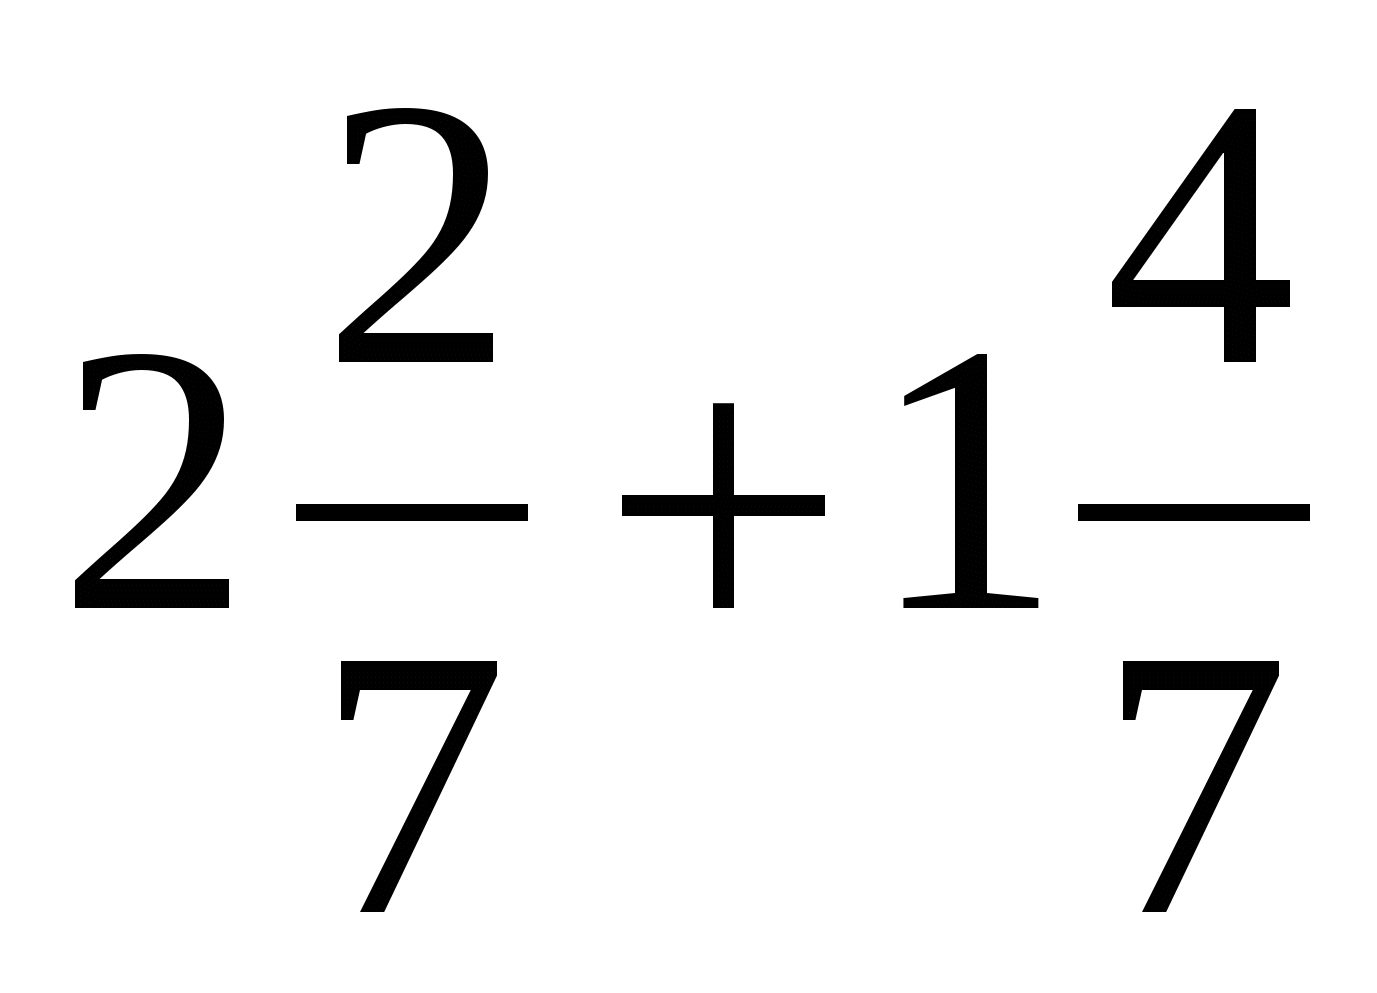 Урок по математике для 5 класса «Сложение смешанных чисел, дробные части которых имеют одинаковые знаменатели»